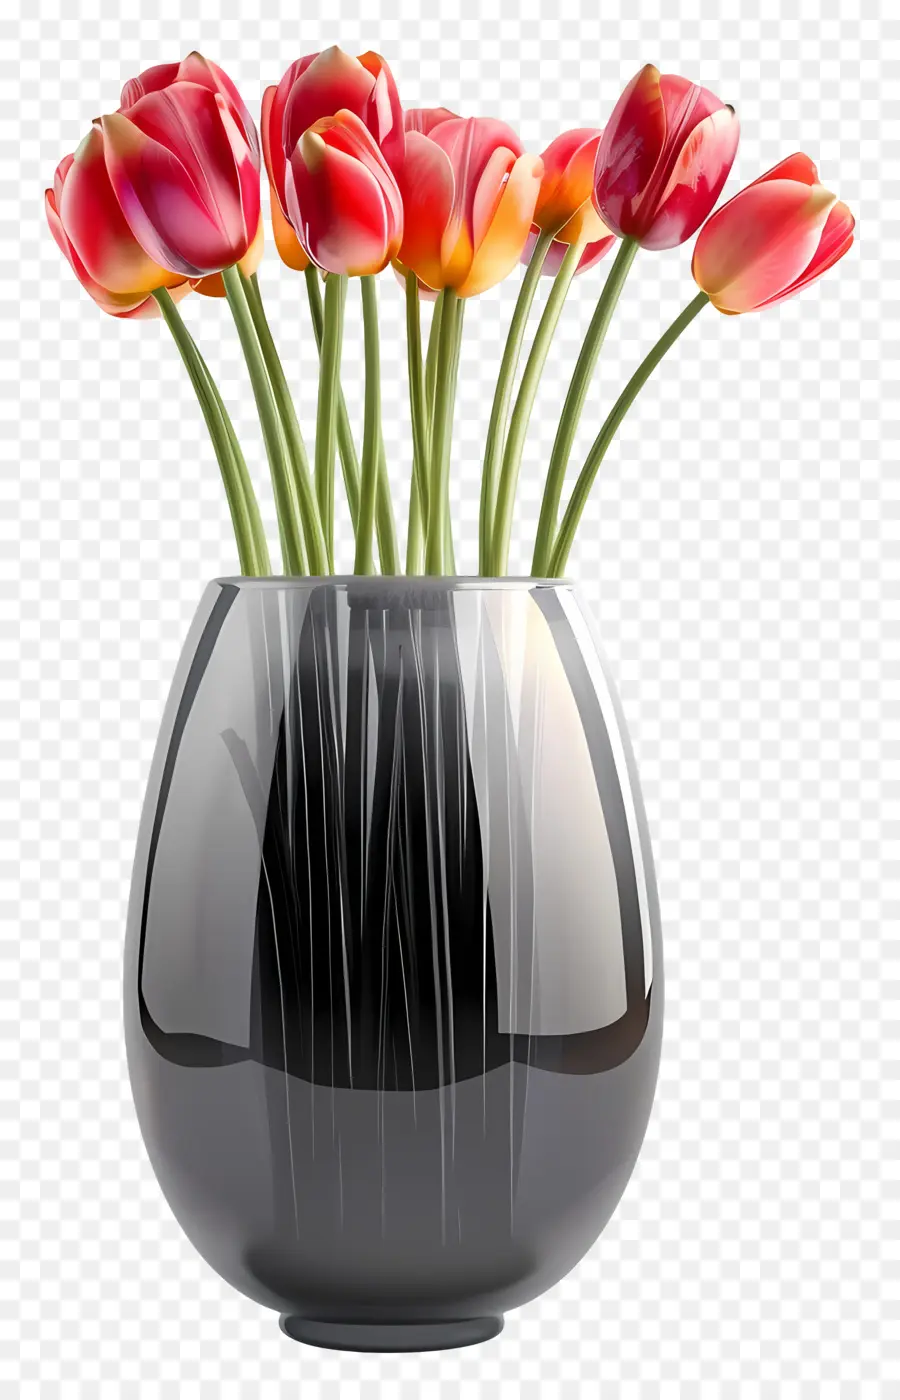 la disposizione dei fiori - Vaso nero con tulipani rossi, steli verdi